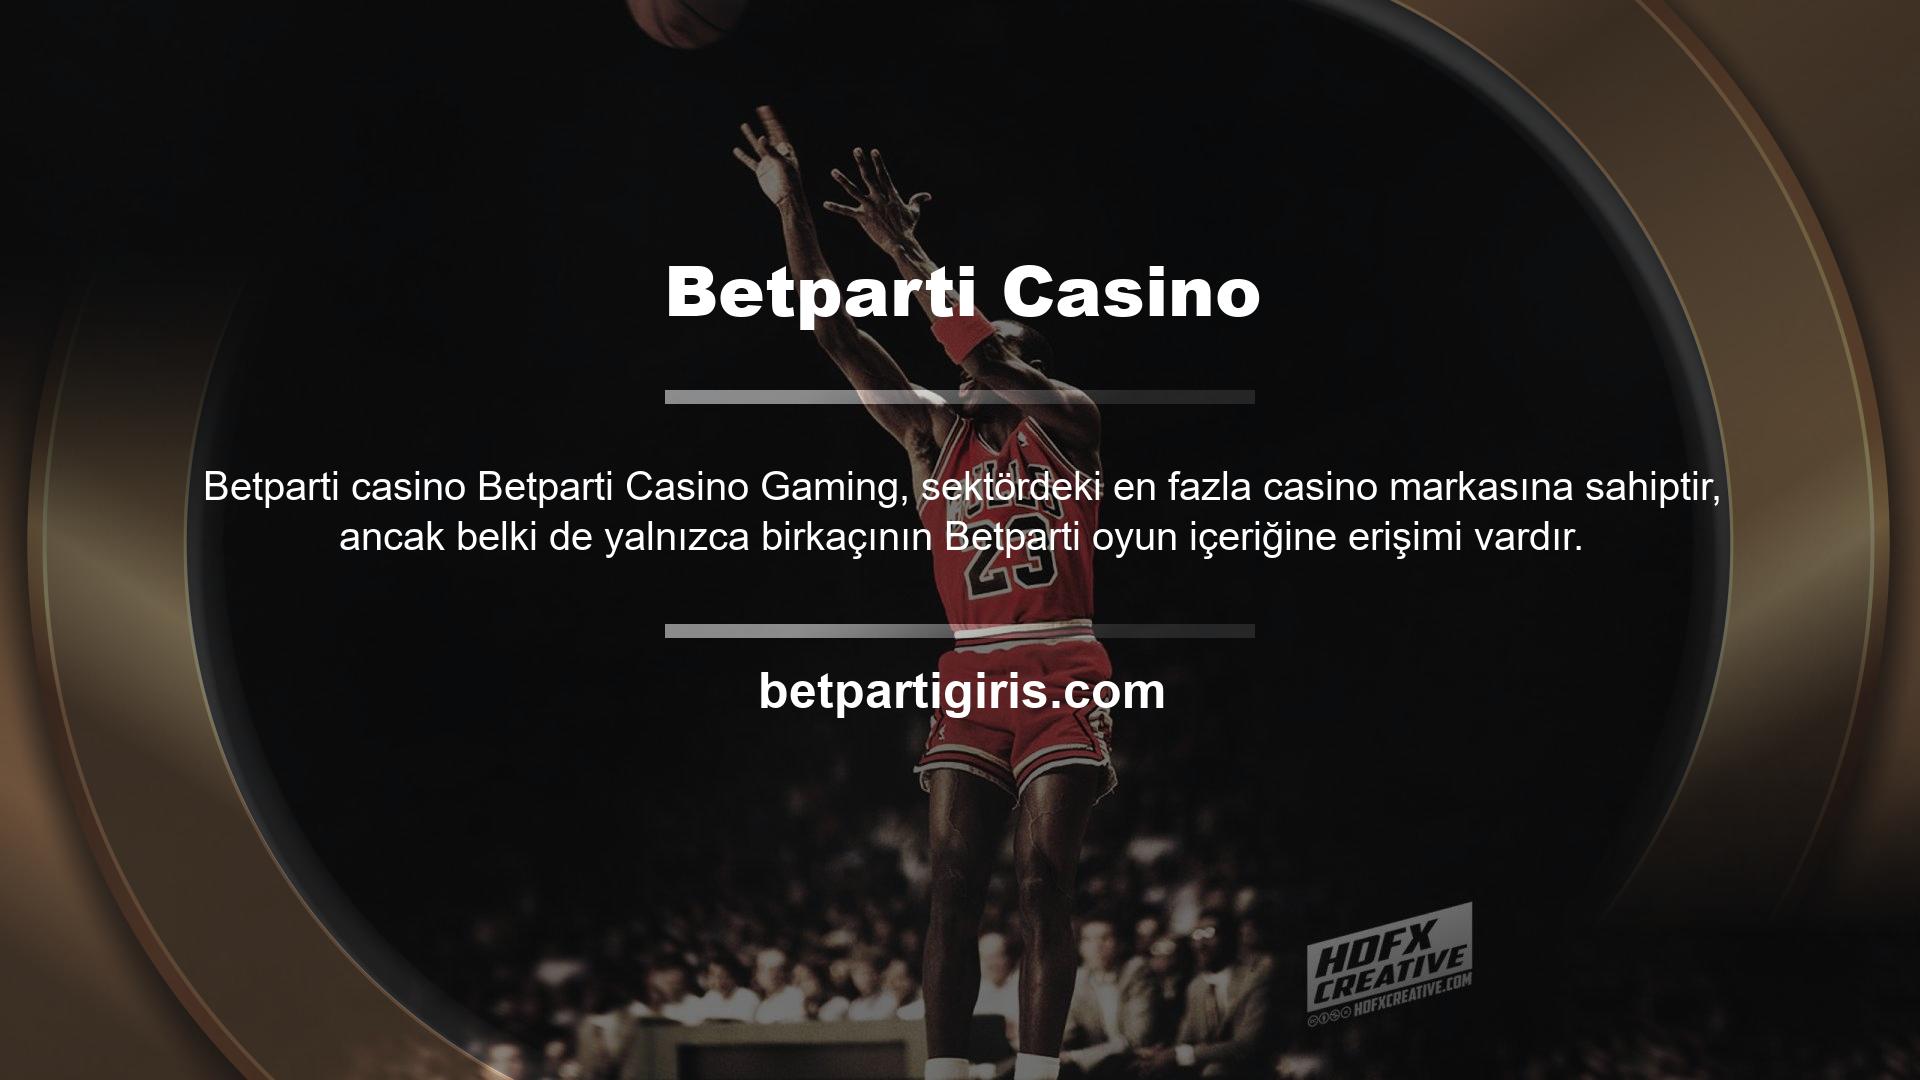 Birkaç yıl önce Betparti, şimdiye kadarki en kapsamlı ve en iyi casino oyunu içeriğini geliştirmek için düzinelerce farklı sağlayıcıyı entegre ederek kaliteli bir casino platformunun temelini attı